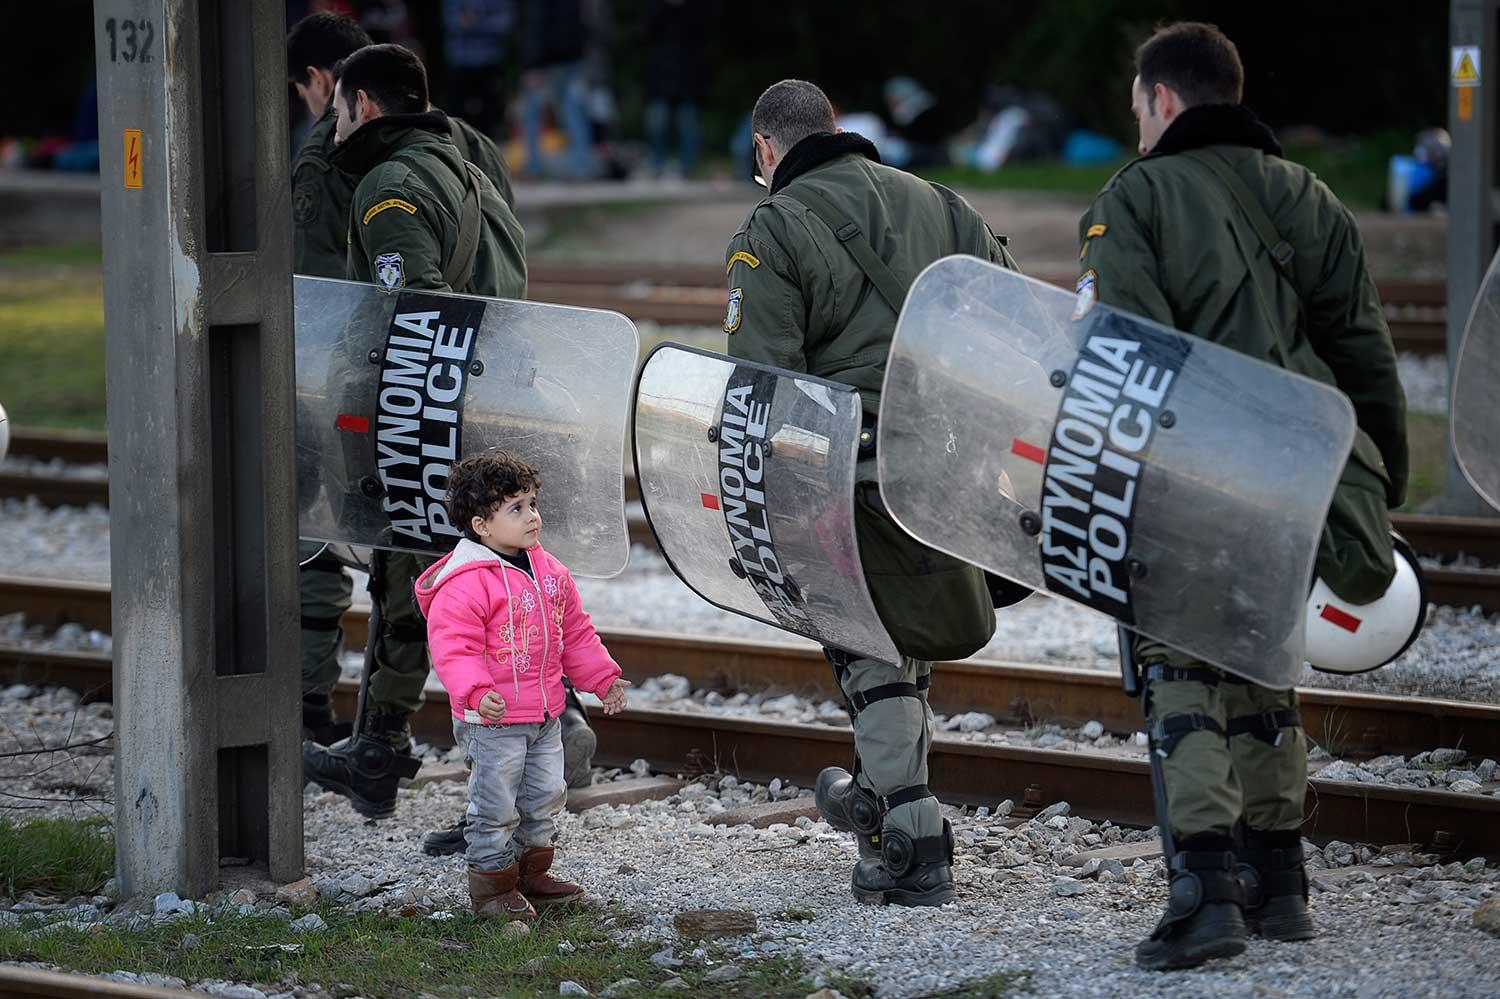 Kravallutrustade grekiska poliser passerar Rayenne Haj Khalaf, 3, som leker vid spåret.